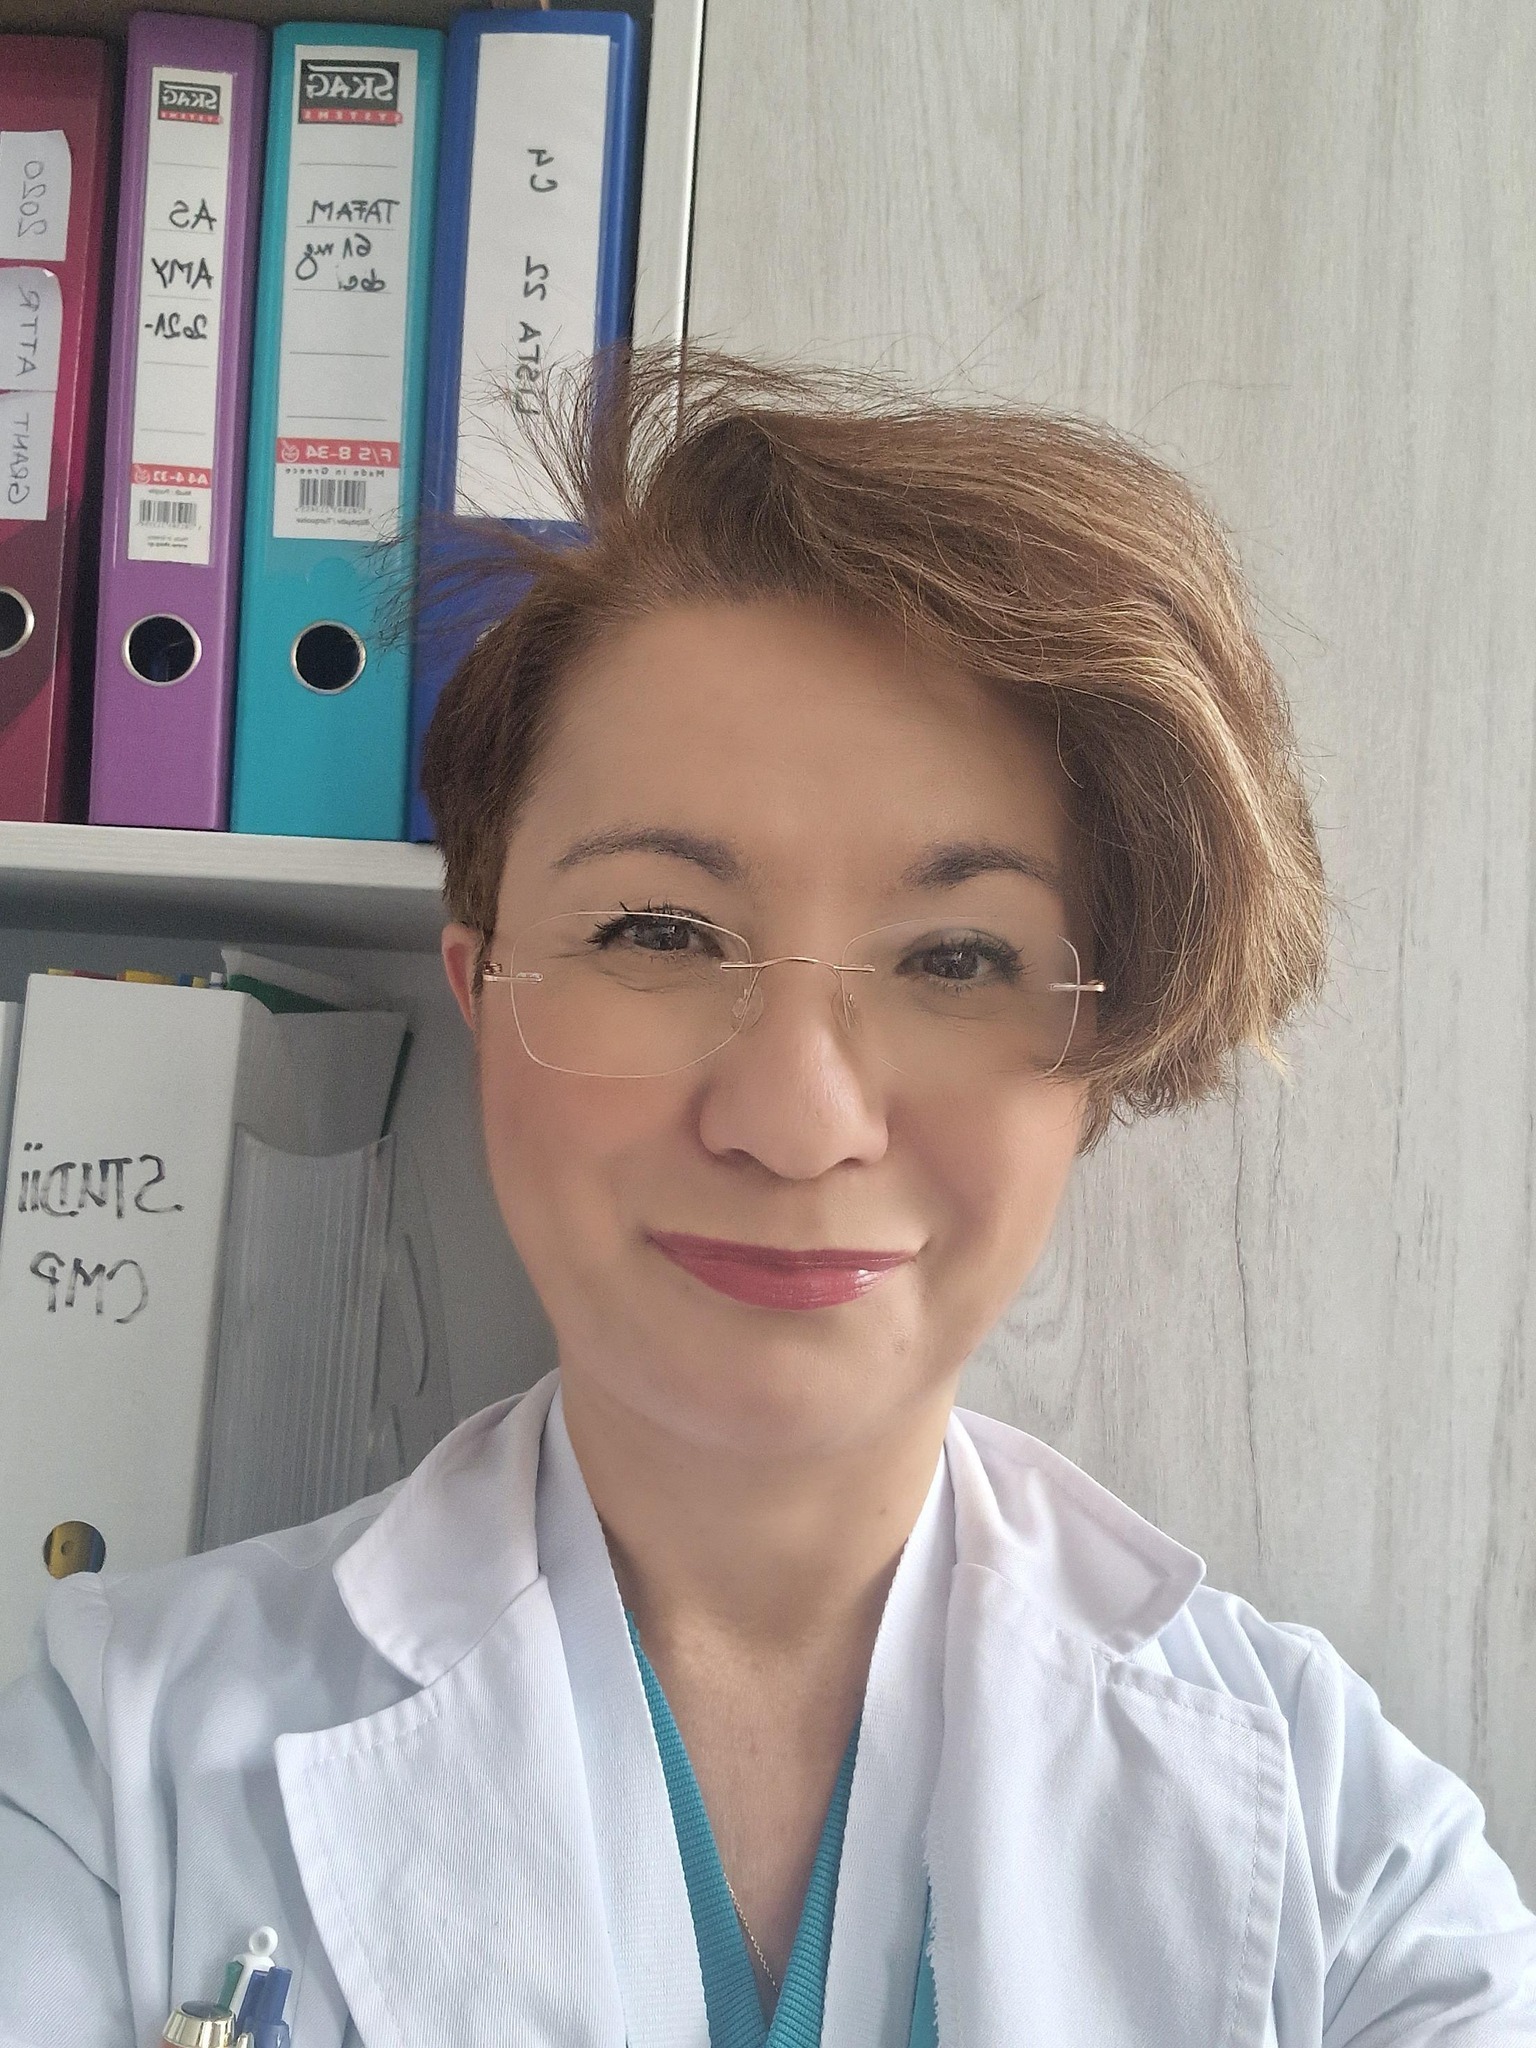 Prof. dr. Ruxandra Jurcuț candidează pentru Consiliul Facultății de Medicină la UMFCD